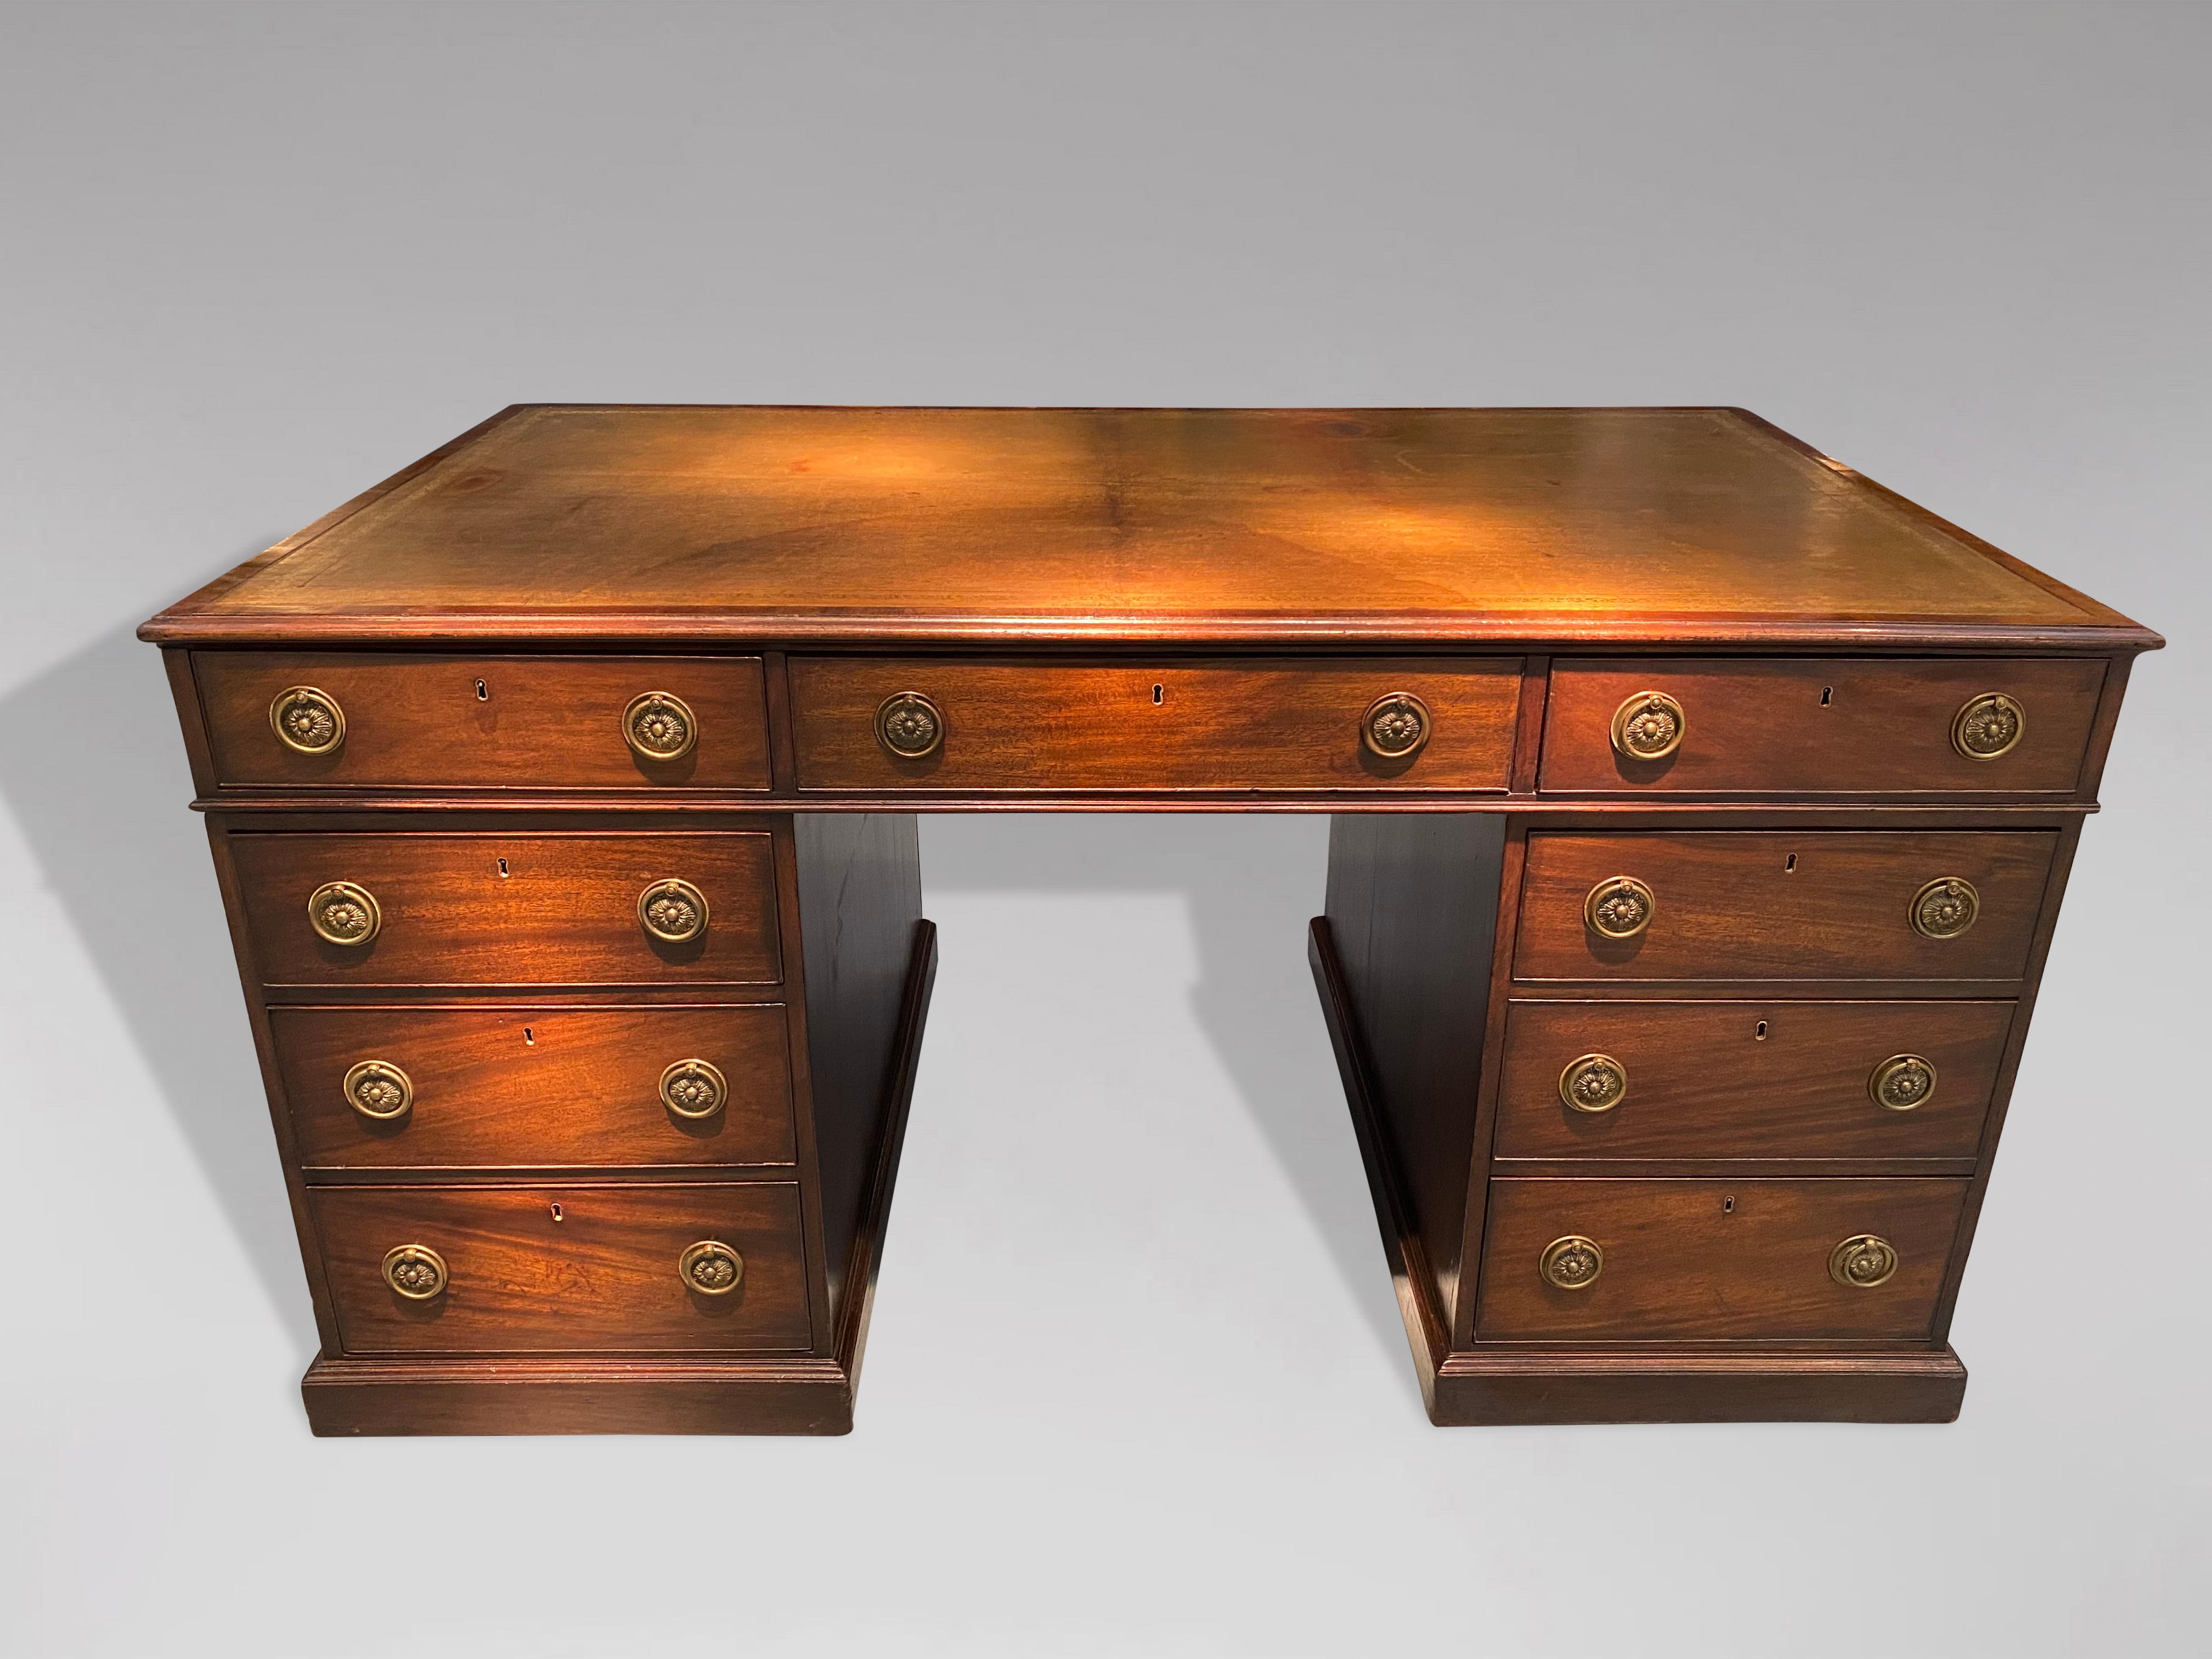 Eine atemberaubende späten 18. Jahrhundert George III Zeitraum Mahagoni Partner Schreibtisch. Neun mit Eichenholz ausgekleidete Schubladen auf einer Seite und drei mit Eichenholz ausgekleidete Schubladen und zwei Schränke auf der anderen Seite. Eine